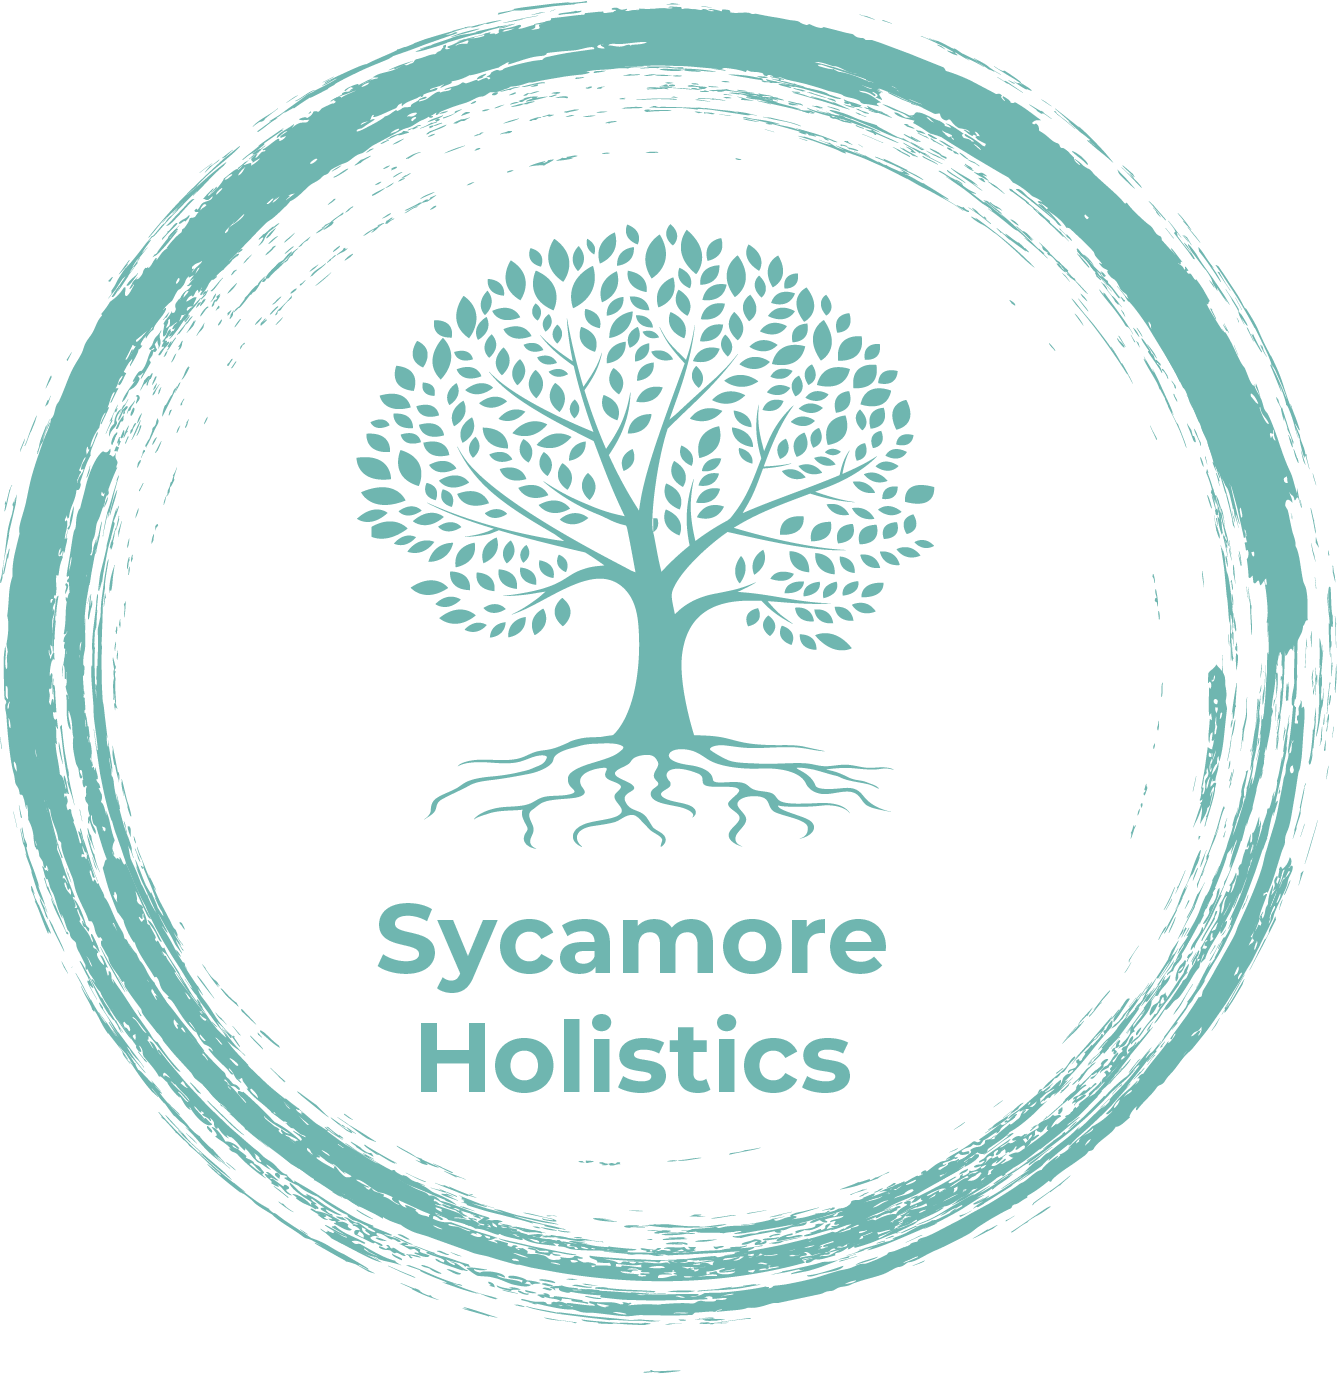 Sycamore Holistics